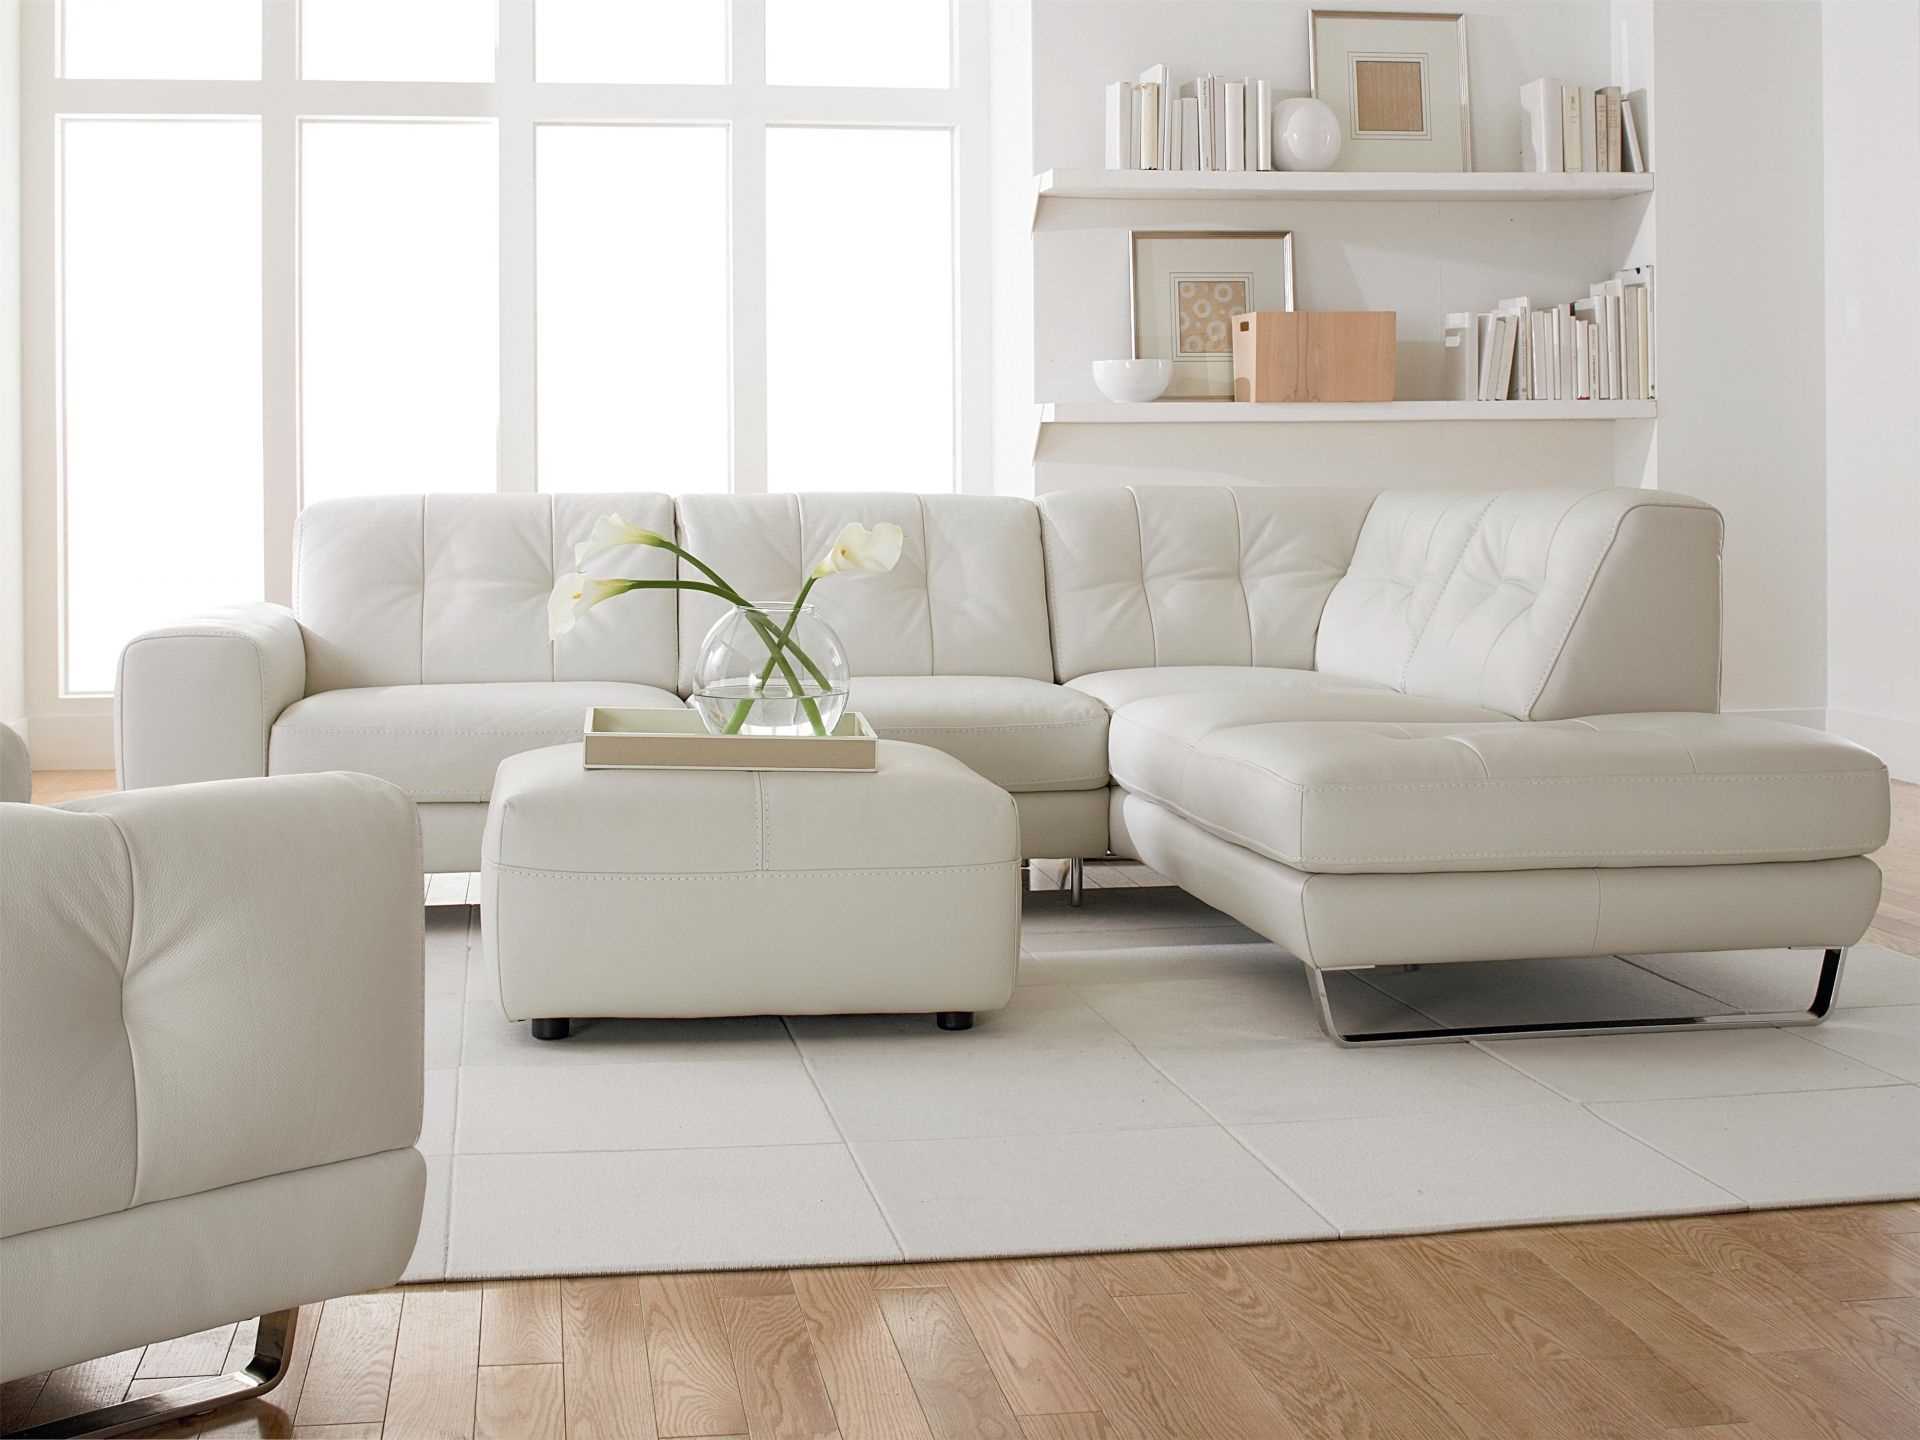 idée de design moderne d'une chambre avec un canapé